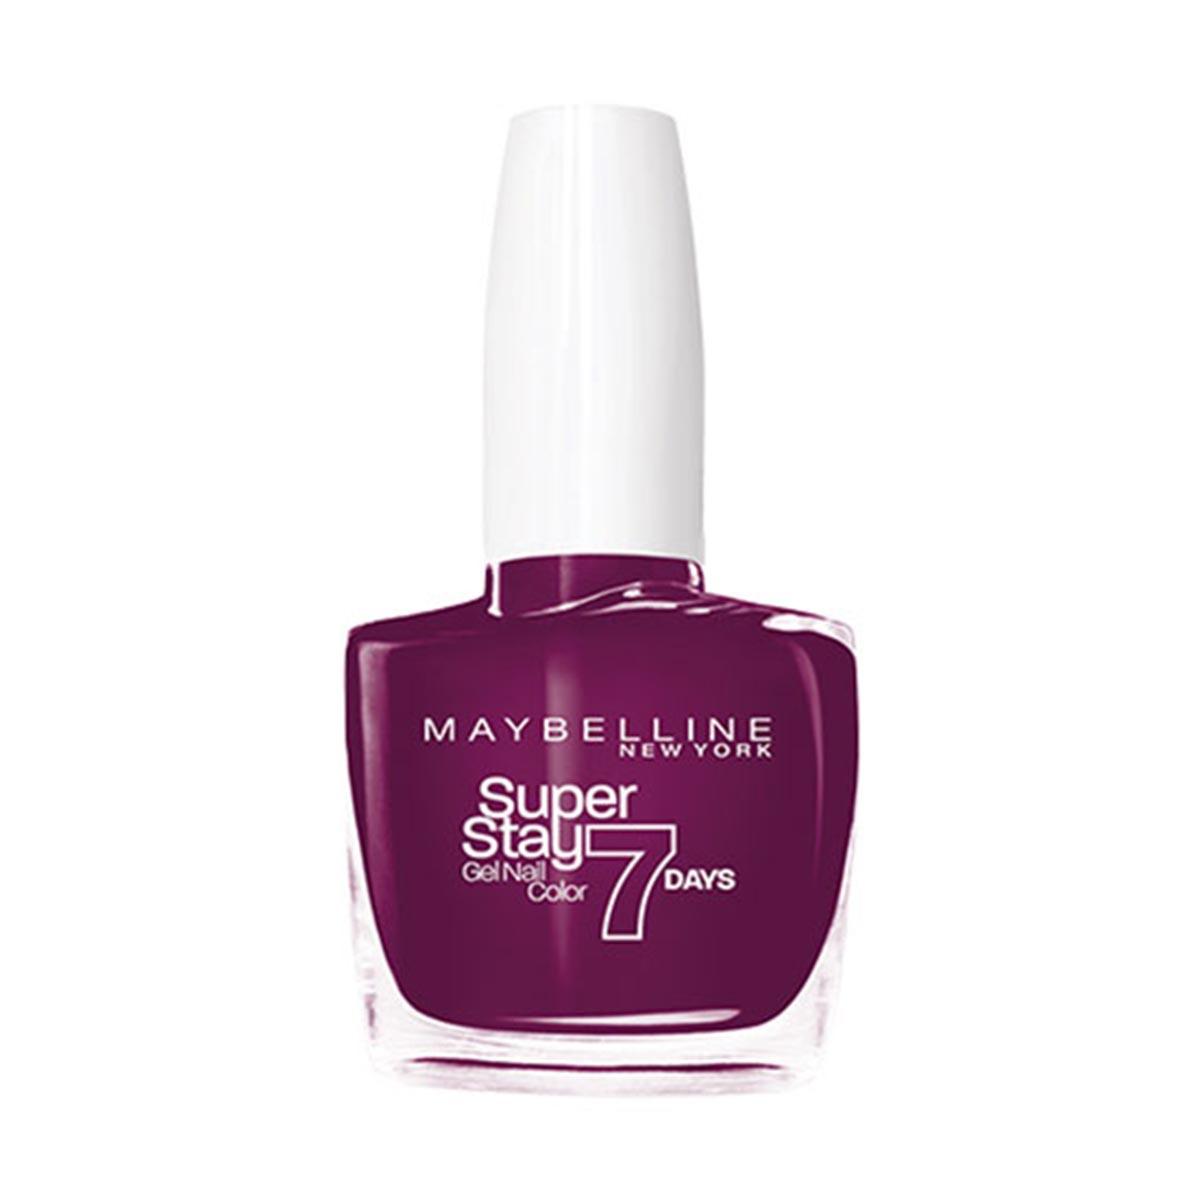 maybelline-superstay-gel-nail-color-7-days-270-ever-burgundy